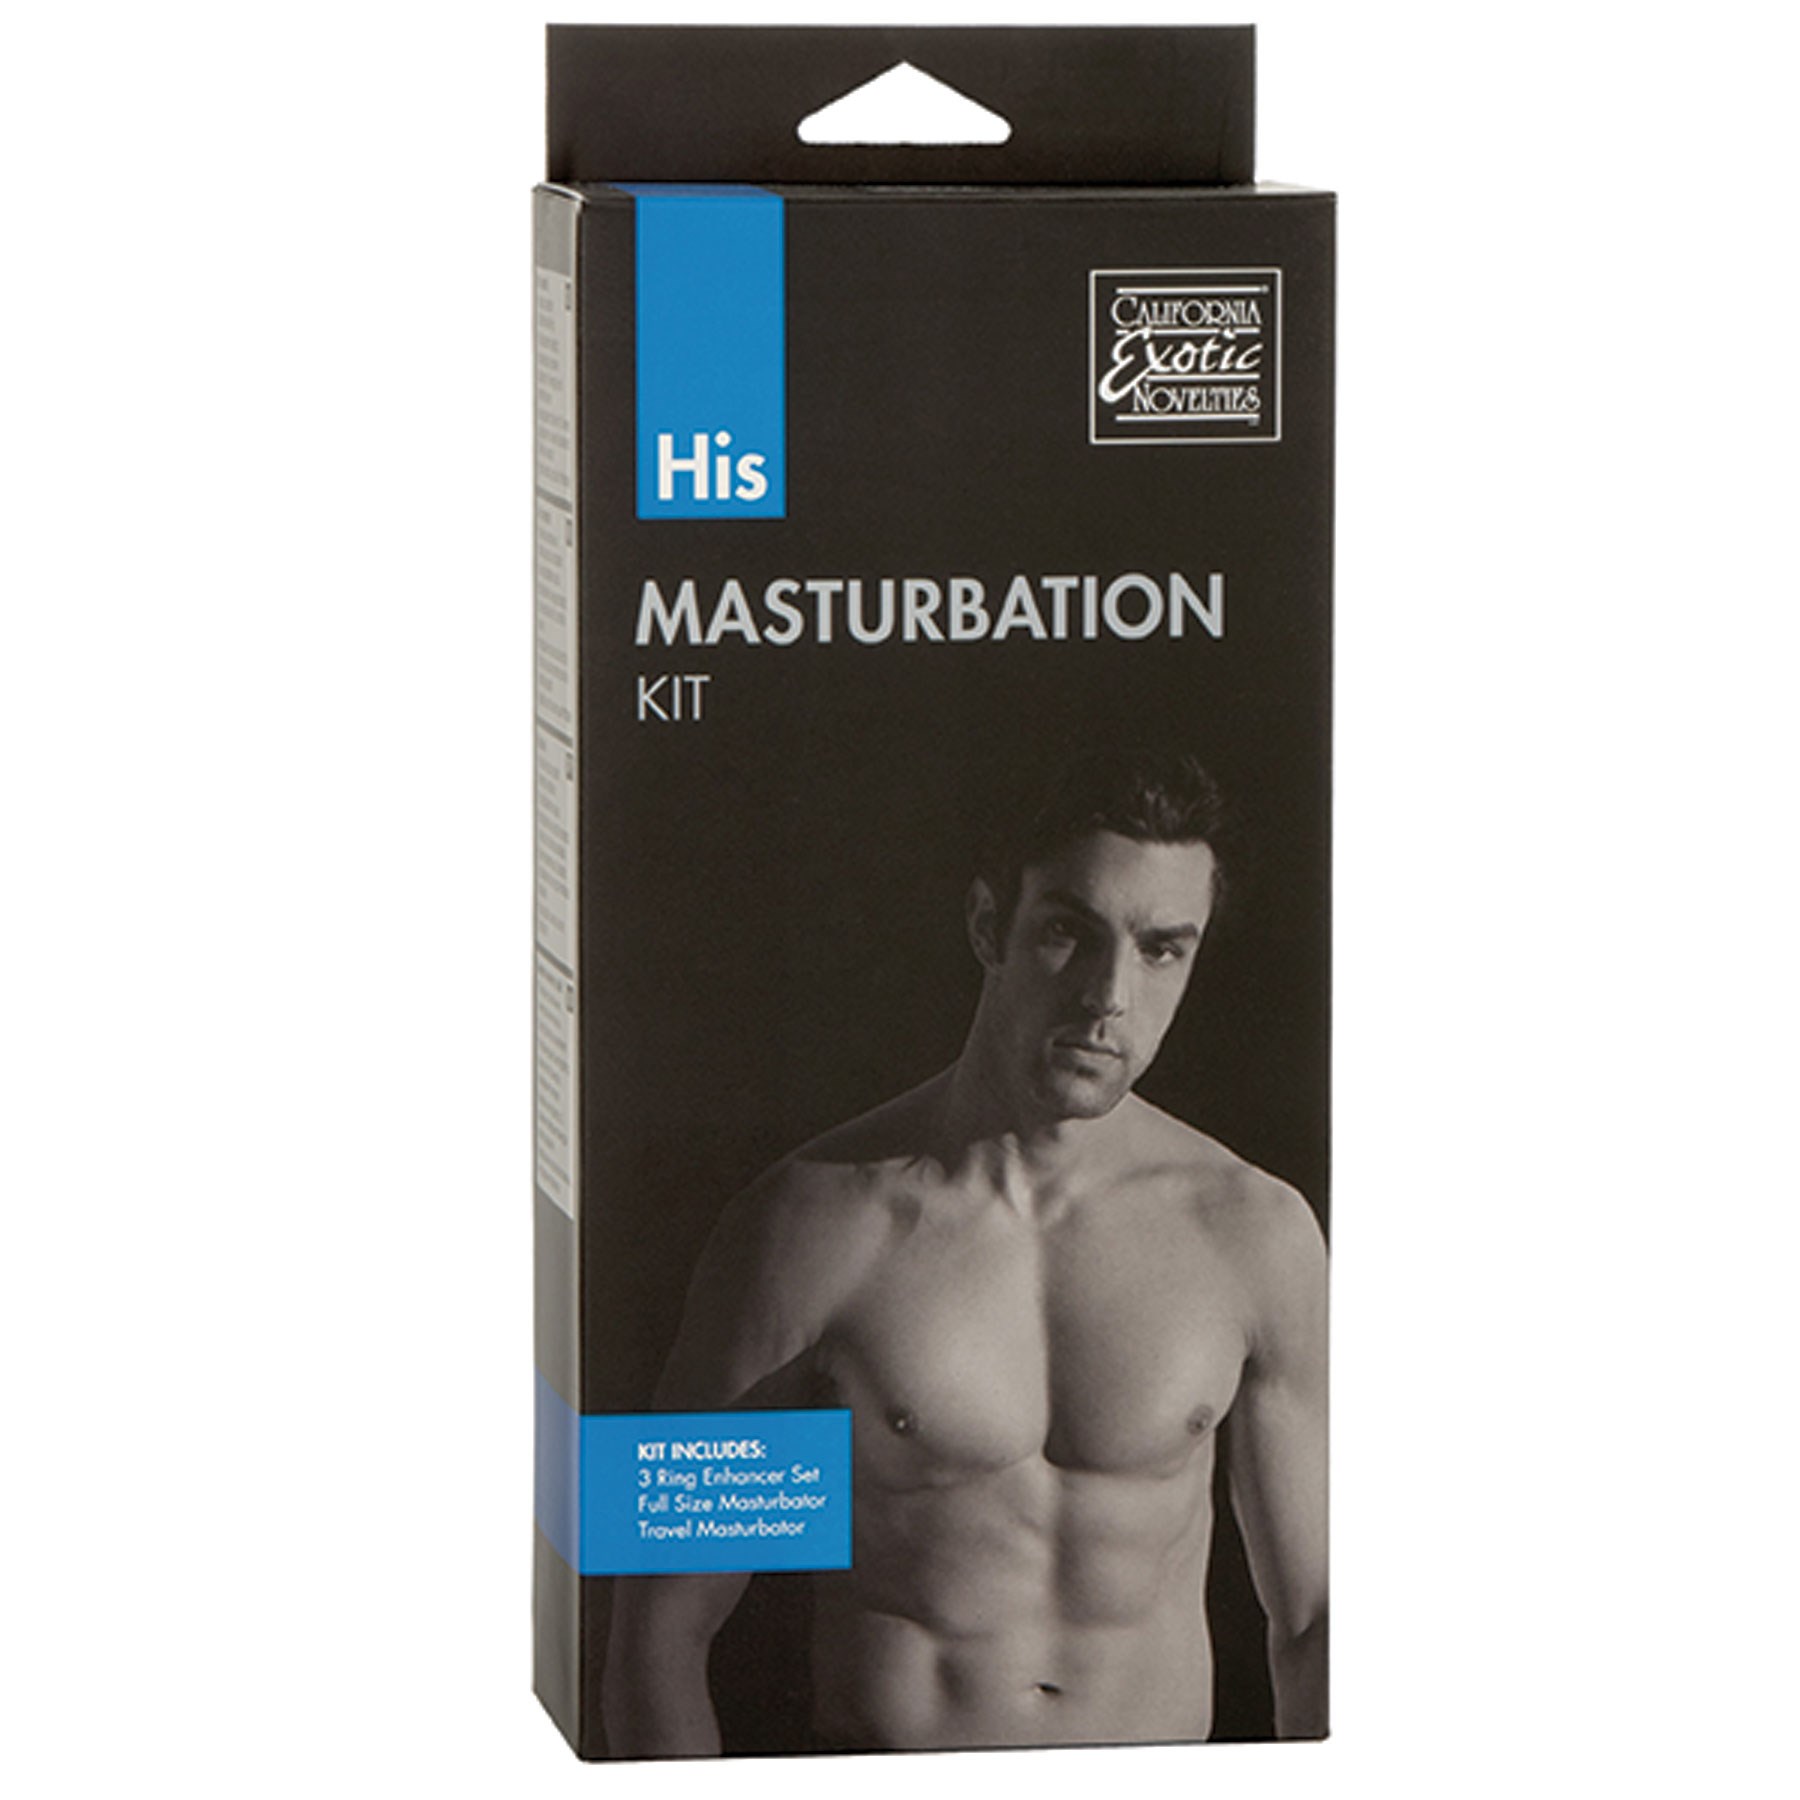 His Masturbation Kit box